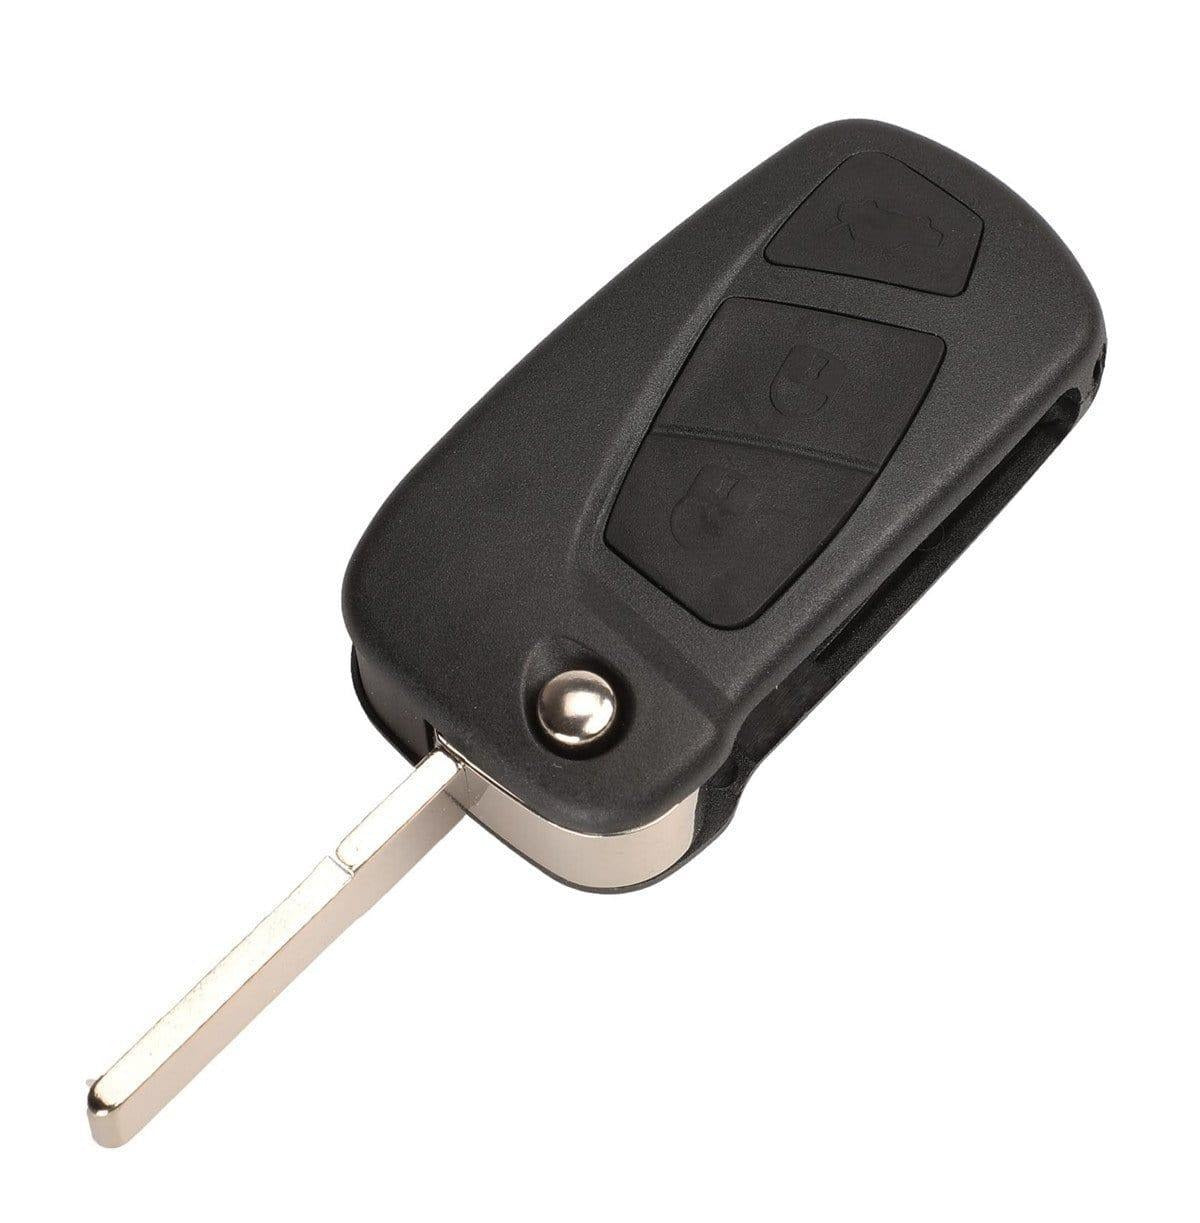 Fekete színű, 2 gombos Fiat kulcsház, bicskakulcs SIP22 kulcsszárral.